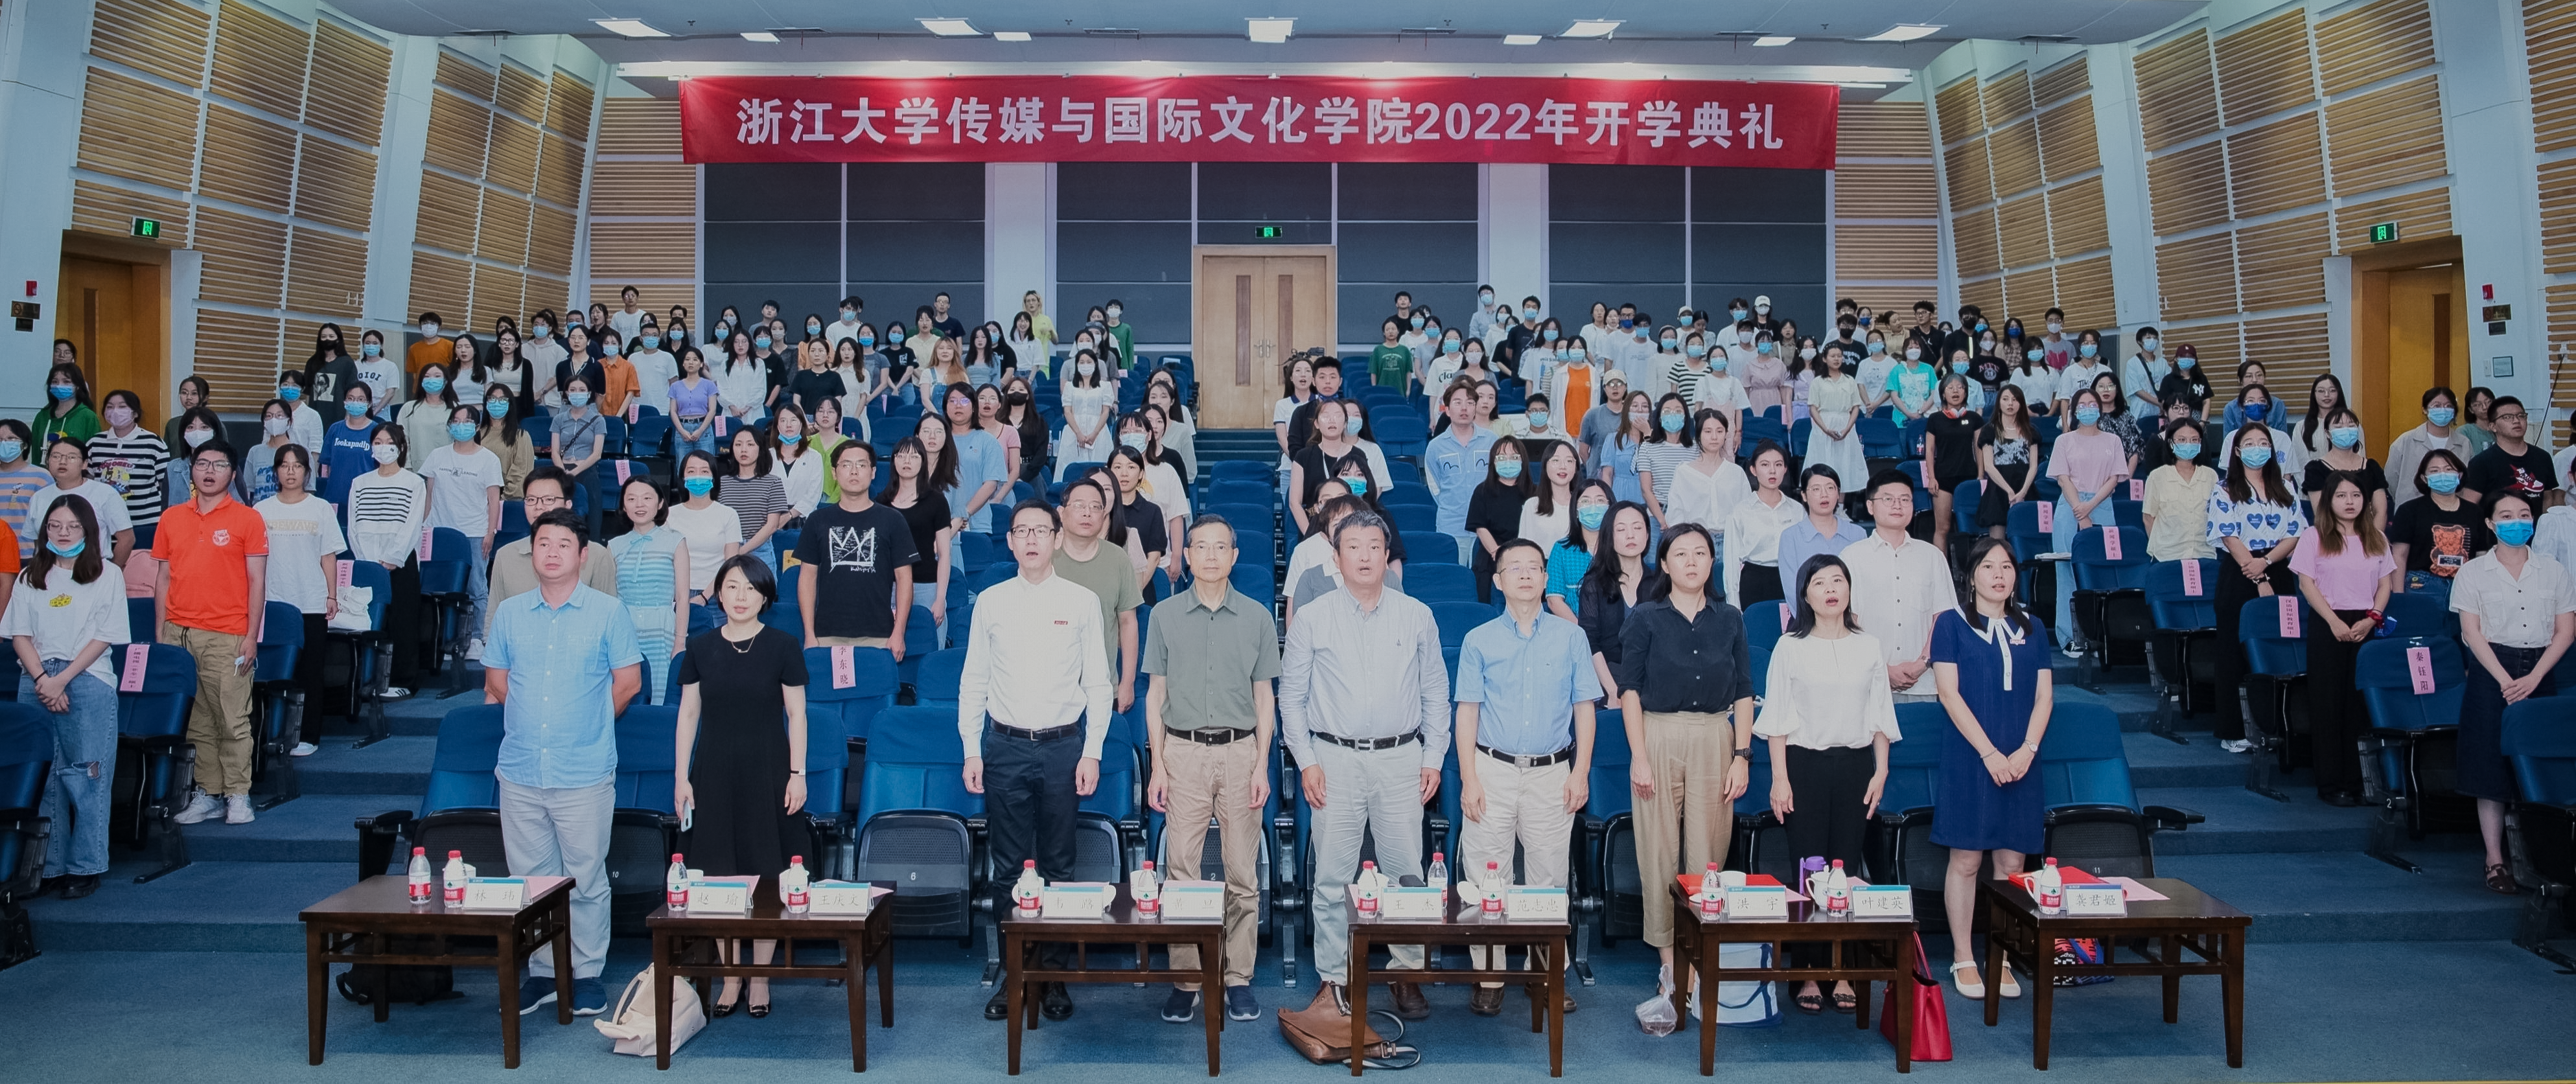 浙江大学传媒与国际文化学院2022年开学典礼圆满举行